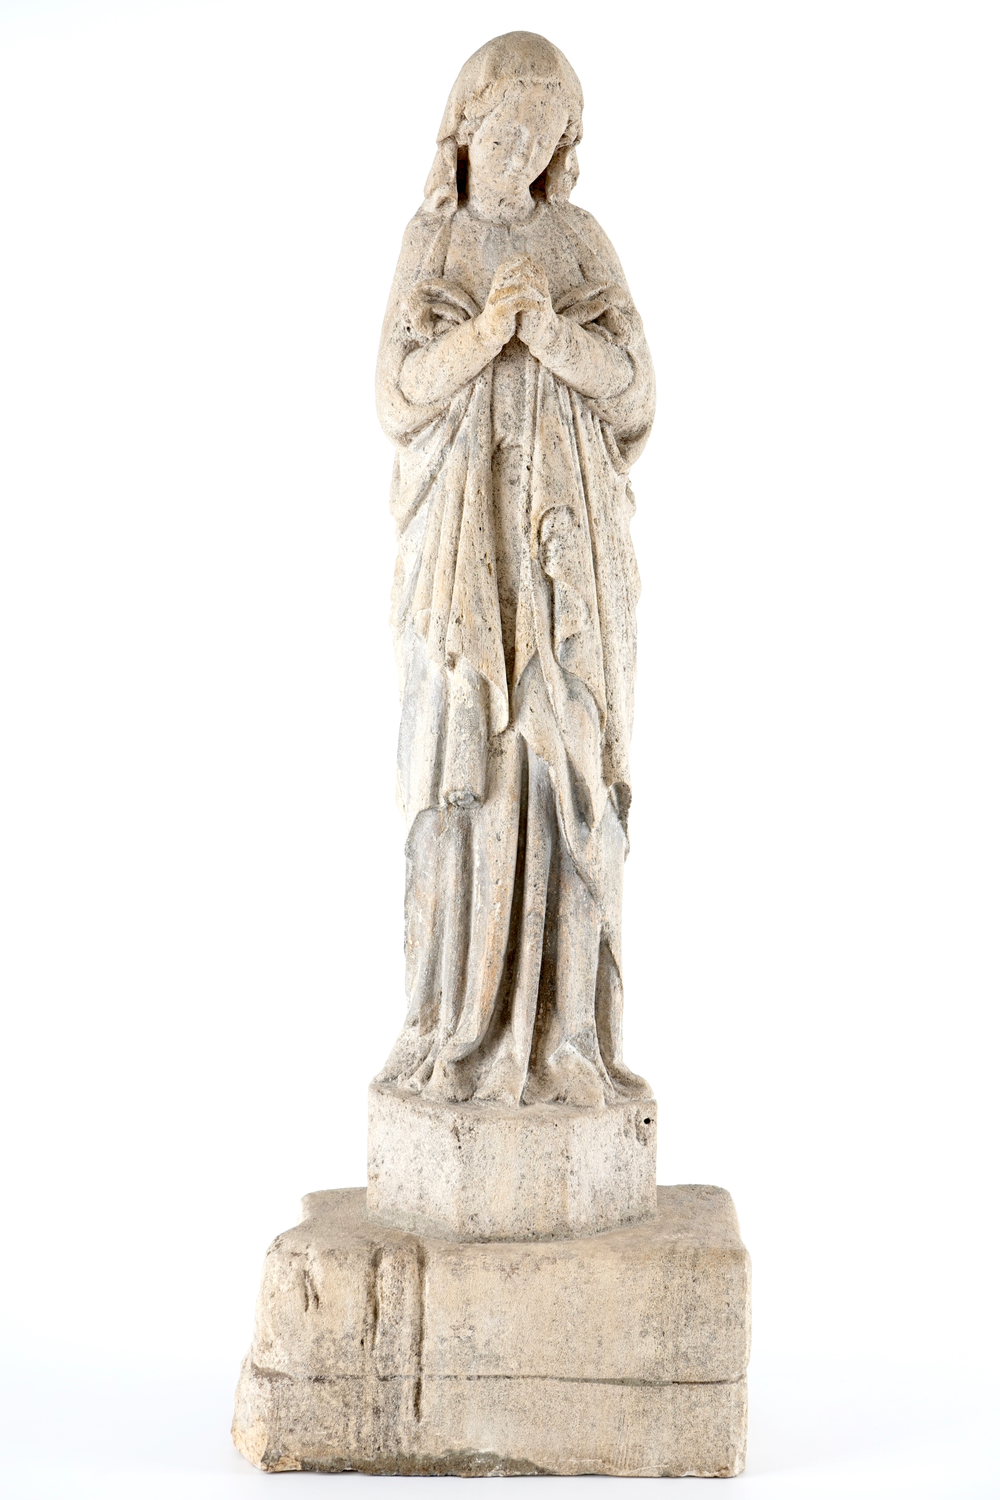 Une grande Vierge en pierre de sable sculpt&eacute;e, les Pays-Bas, 16/17&egrave;me